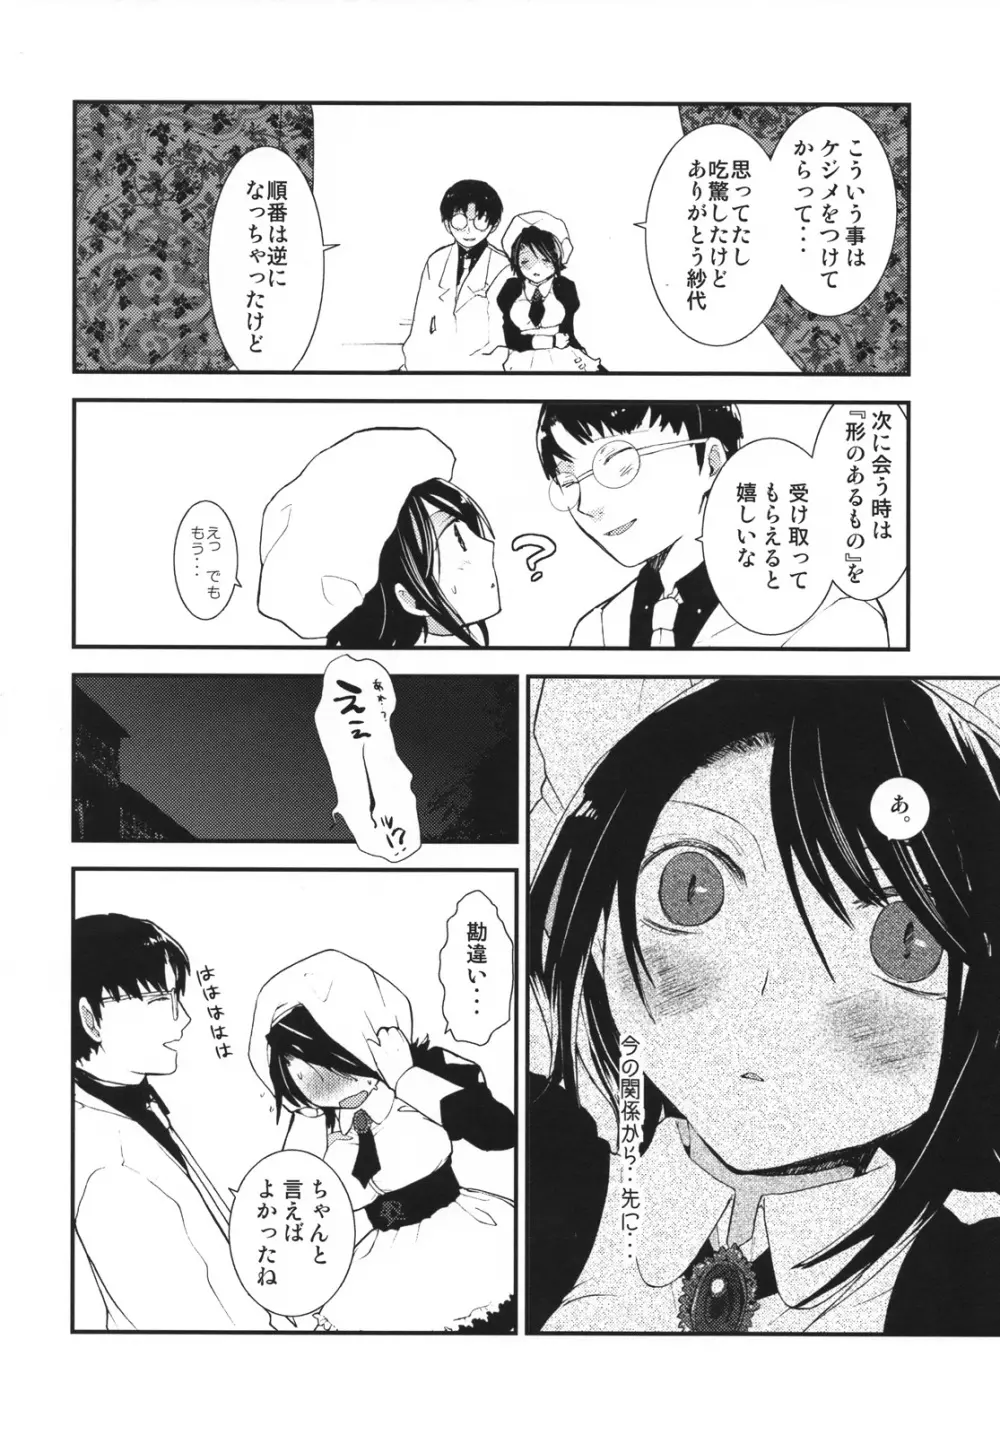 Umineko sono higurashi - page13